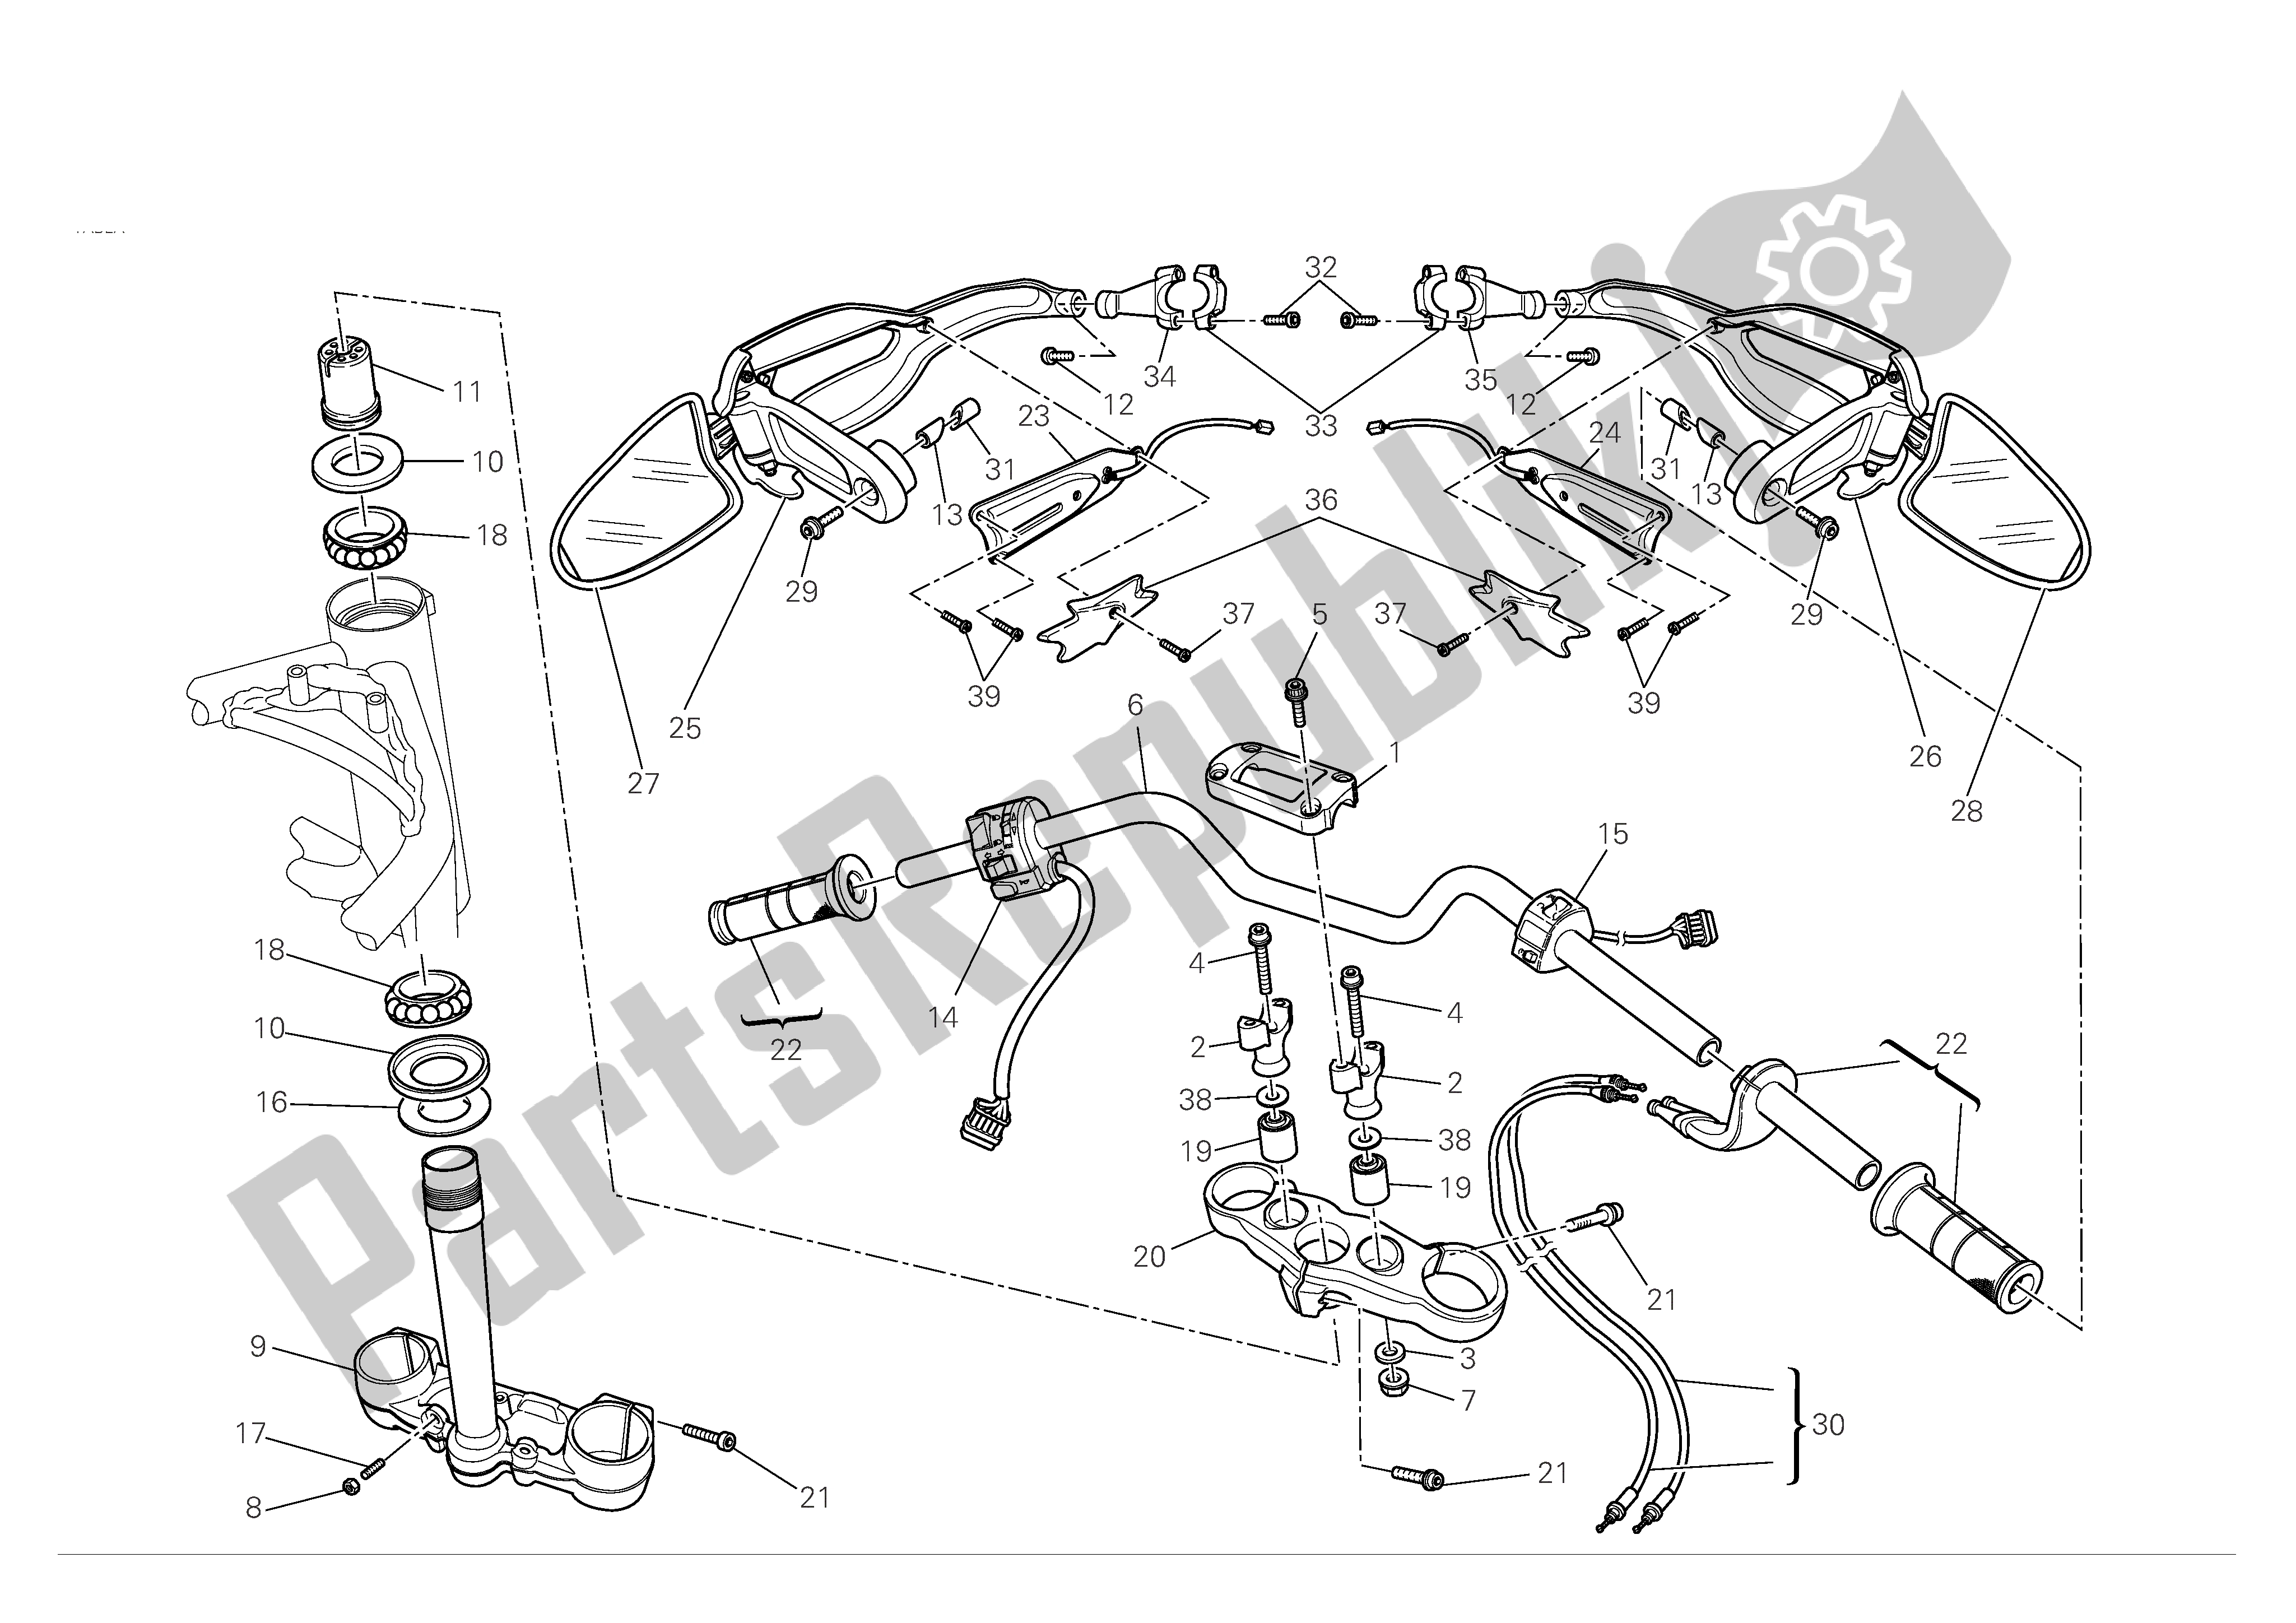 Tutte le parti per il Manubrio E Comandi del Ducati Hypermotard 1100 2008